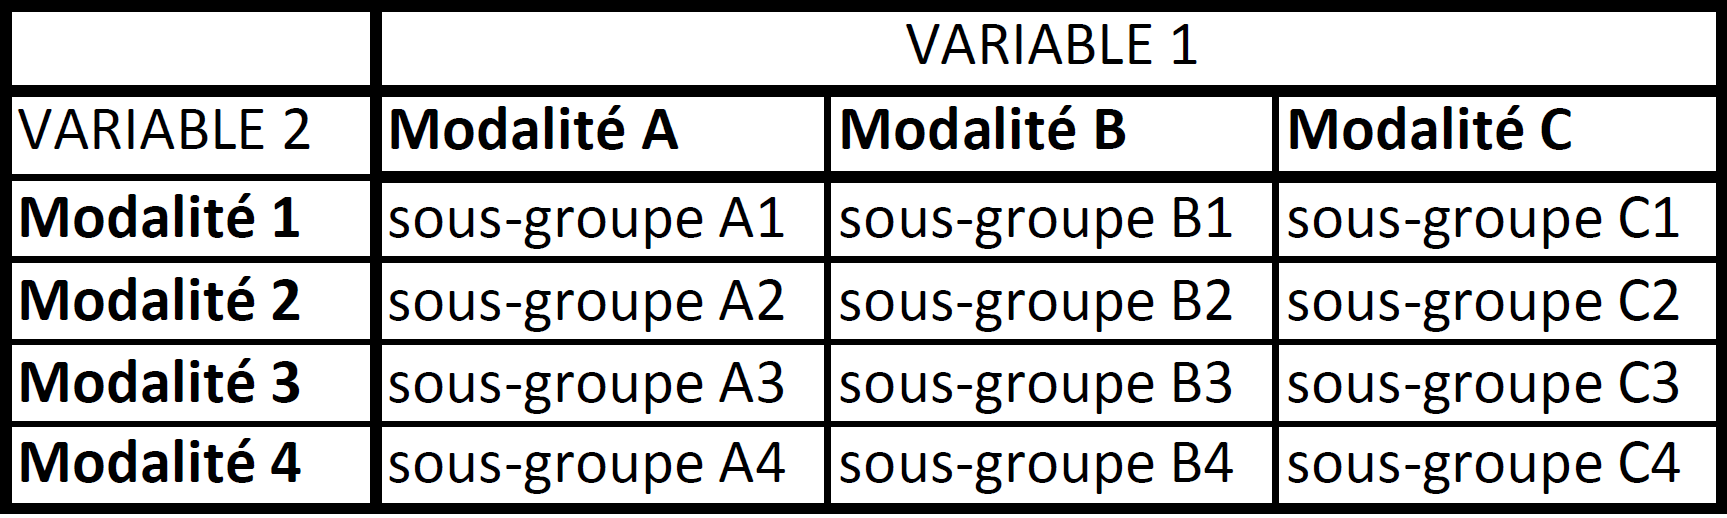 Tableau à double entrée avec la Variable 1 en colonne et Variable 2 en lignes.